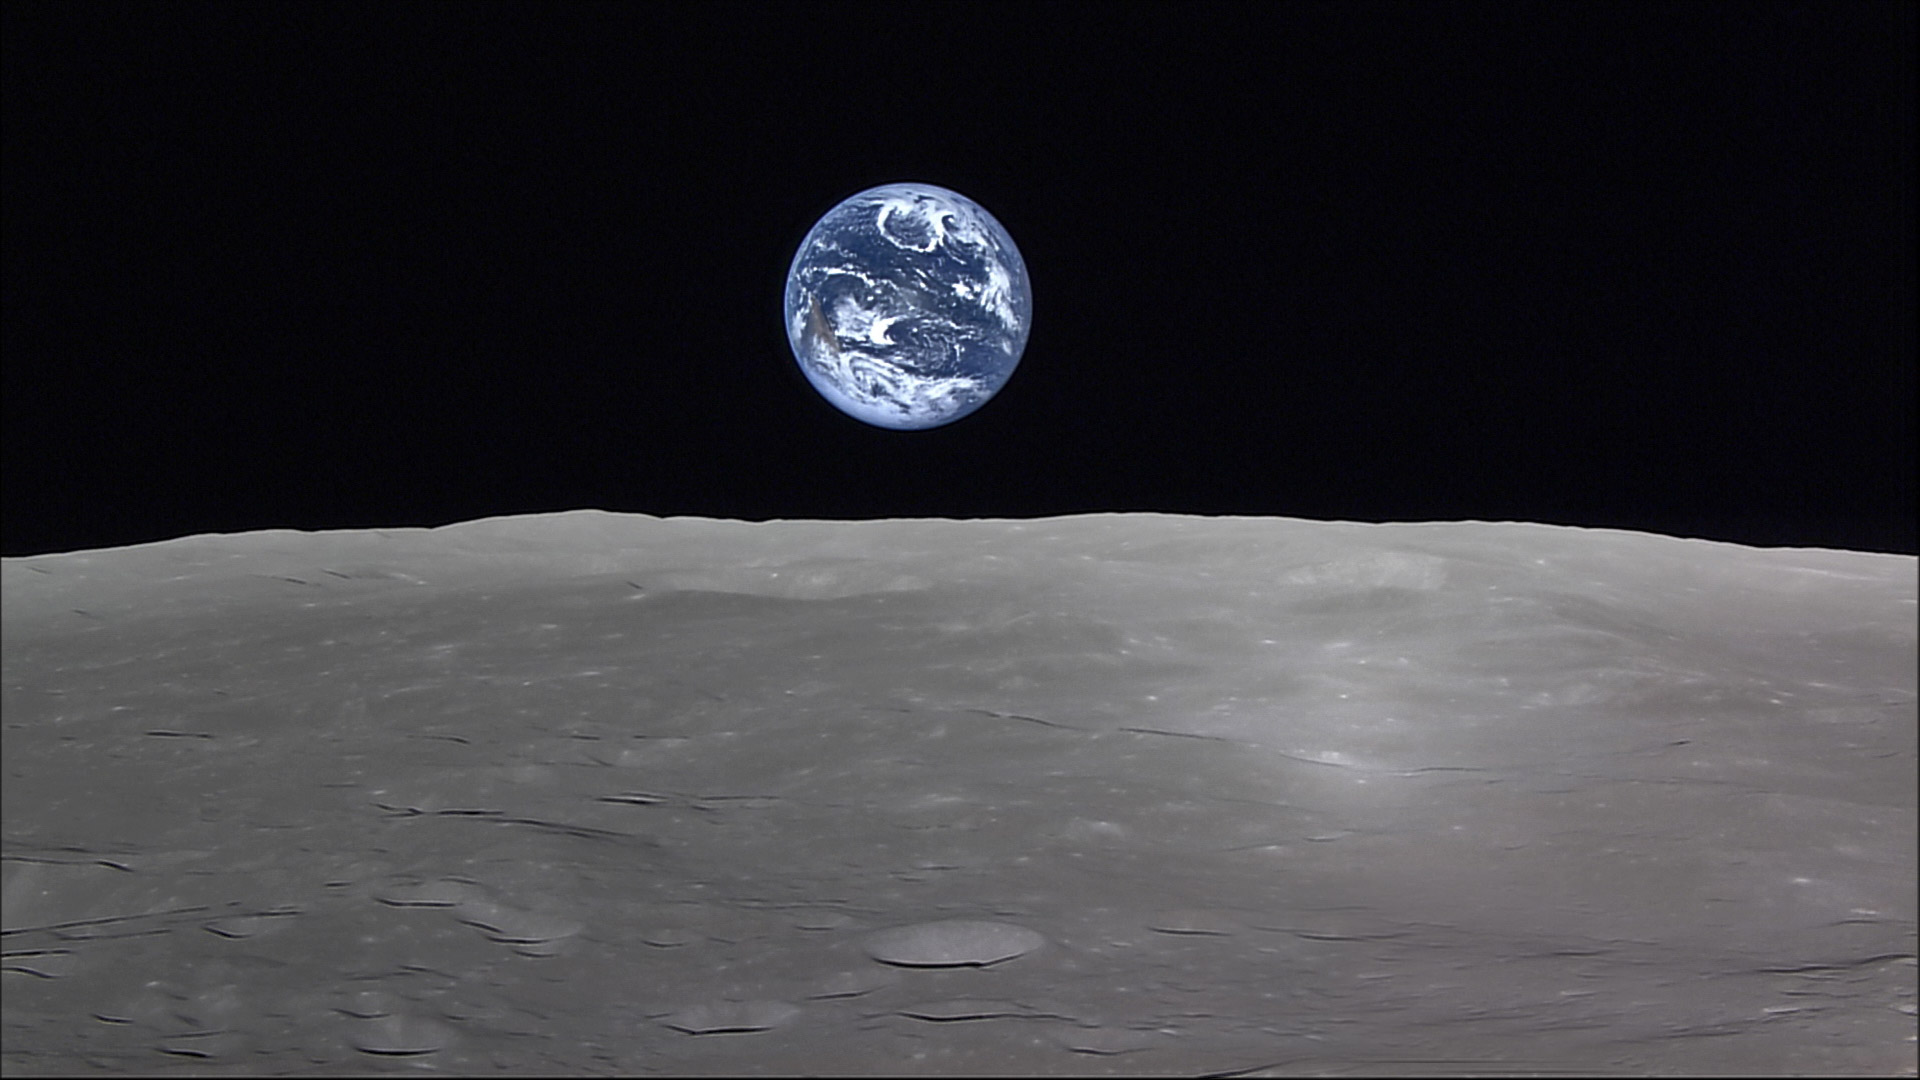 La Terre vue depuis l'orbite lunaire. Cette image a été acquise par la sonde japonaise Kaguya, en orbite autour de la Lune de septembre 2007 à juin 2009. © Jaxa